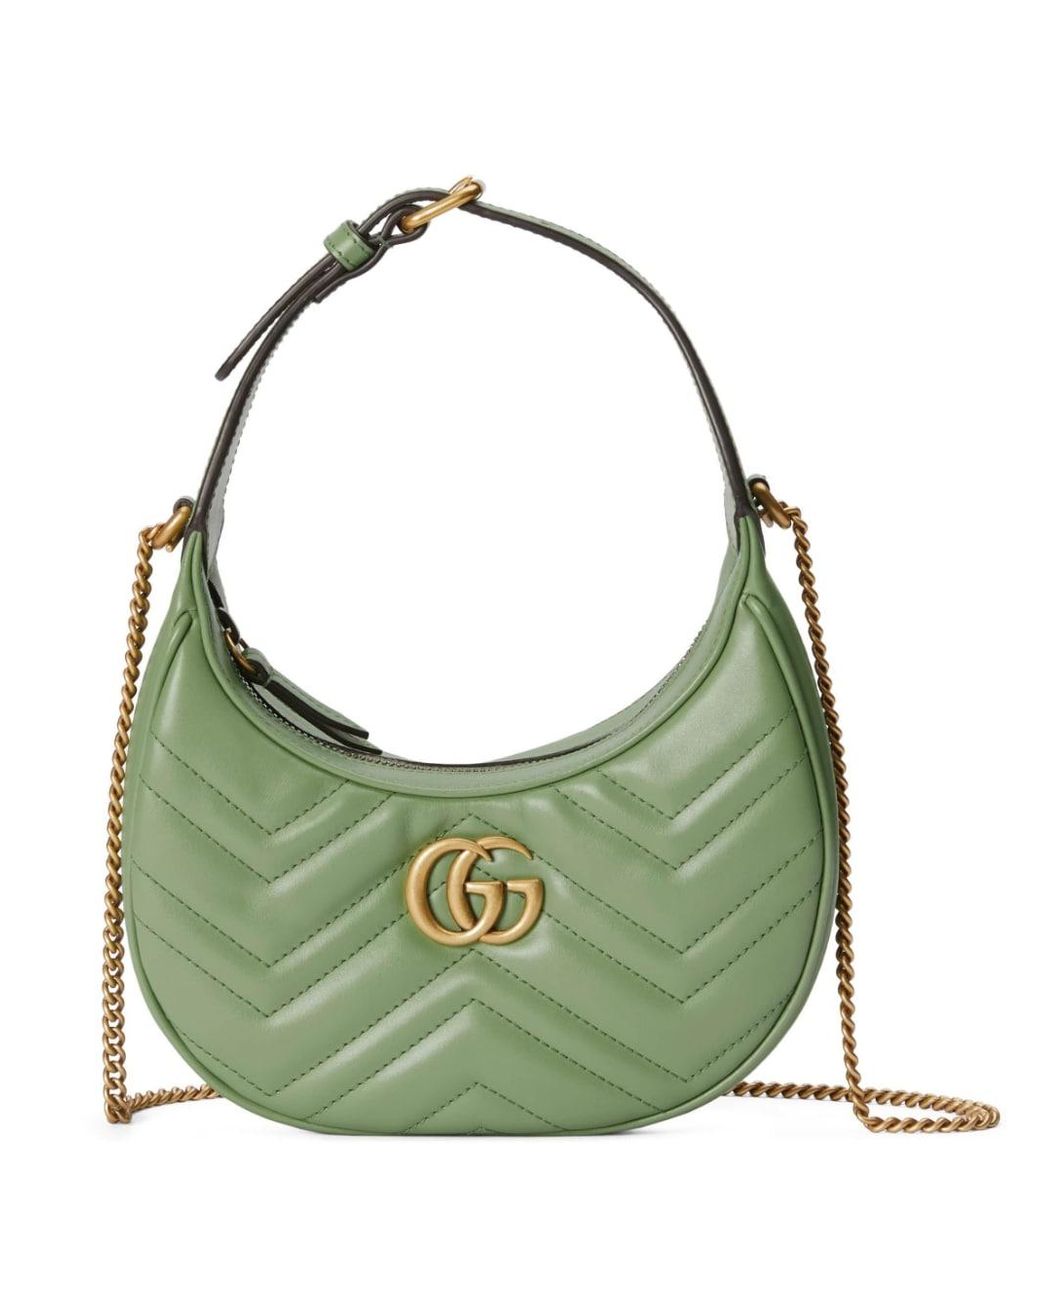 Gucci GG Marmont Kleine Tas in het Groen | Lyst NL